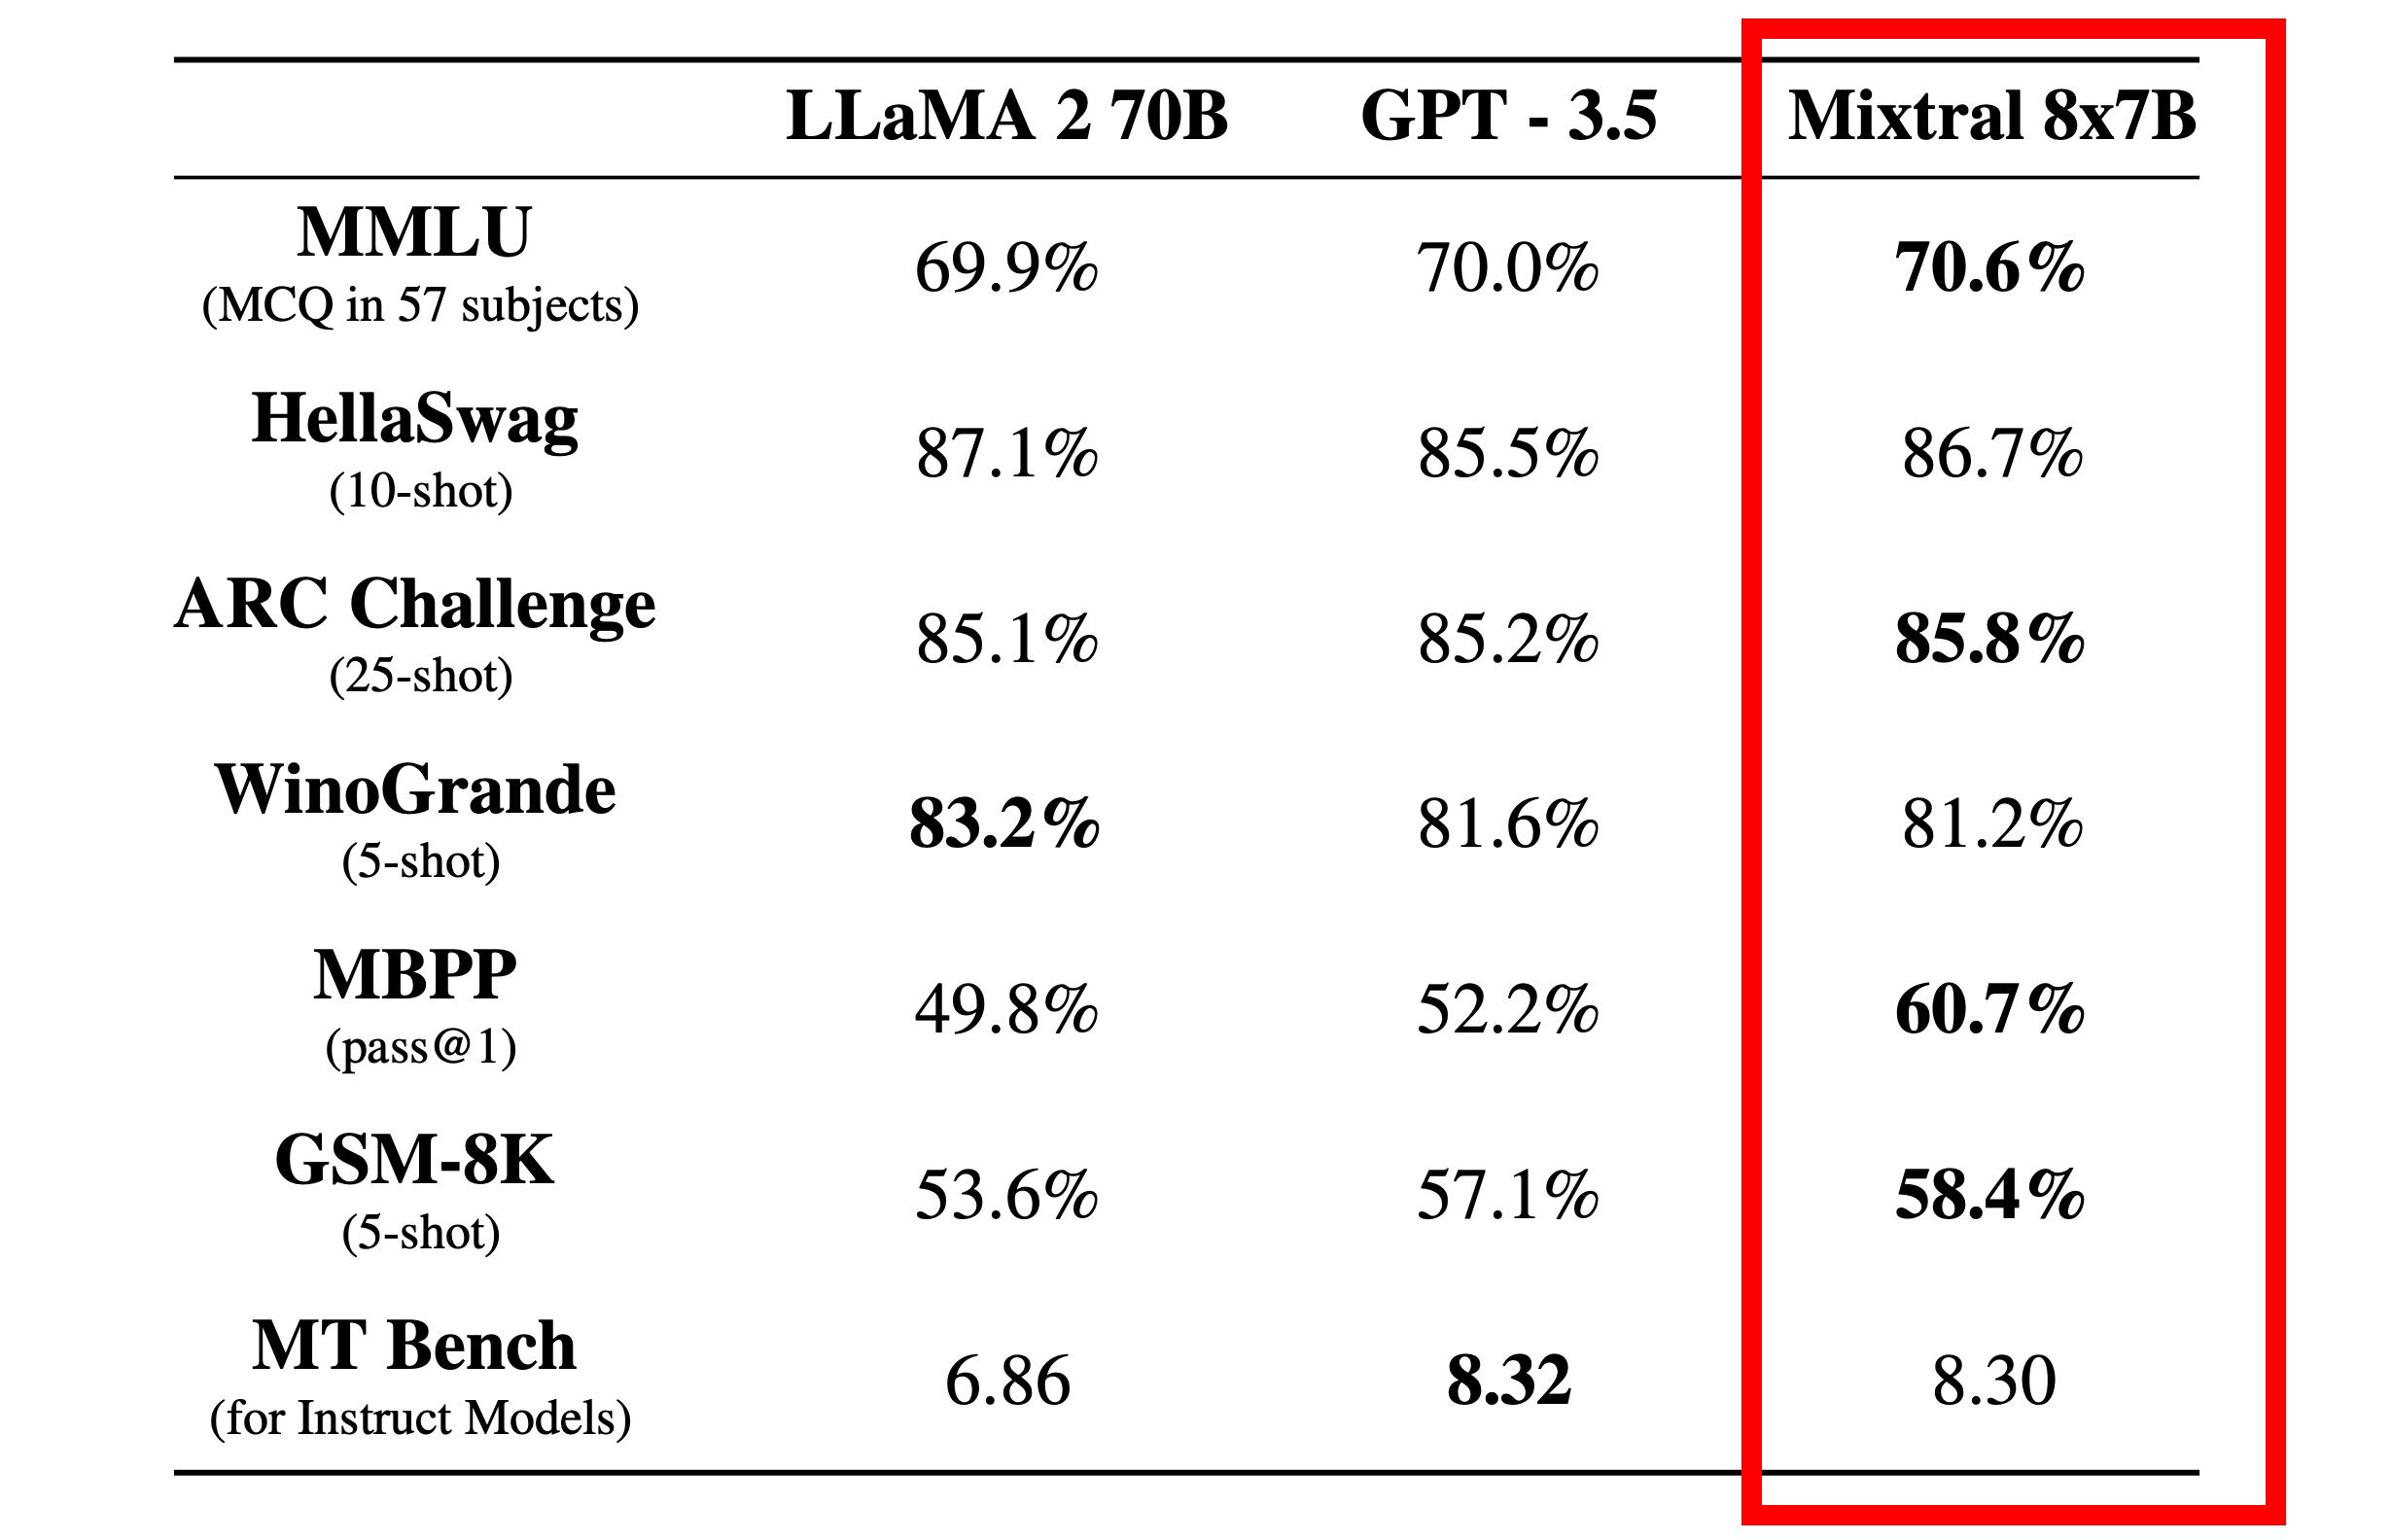 Uma tabela de comparação que mostra porcentagens de desempenho para vários modelos de IA, incluindo LLAMA 2 70B, GPT-3.5 e Mixtral 8x7B em diferentes benchmarks como MMLU, HellaSwag, ARC Challenge e outros.